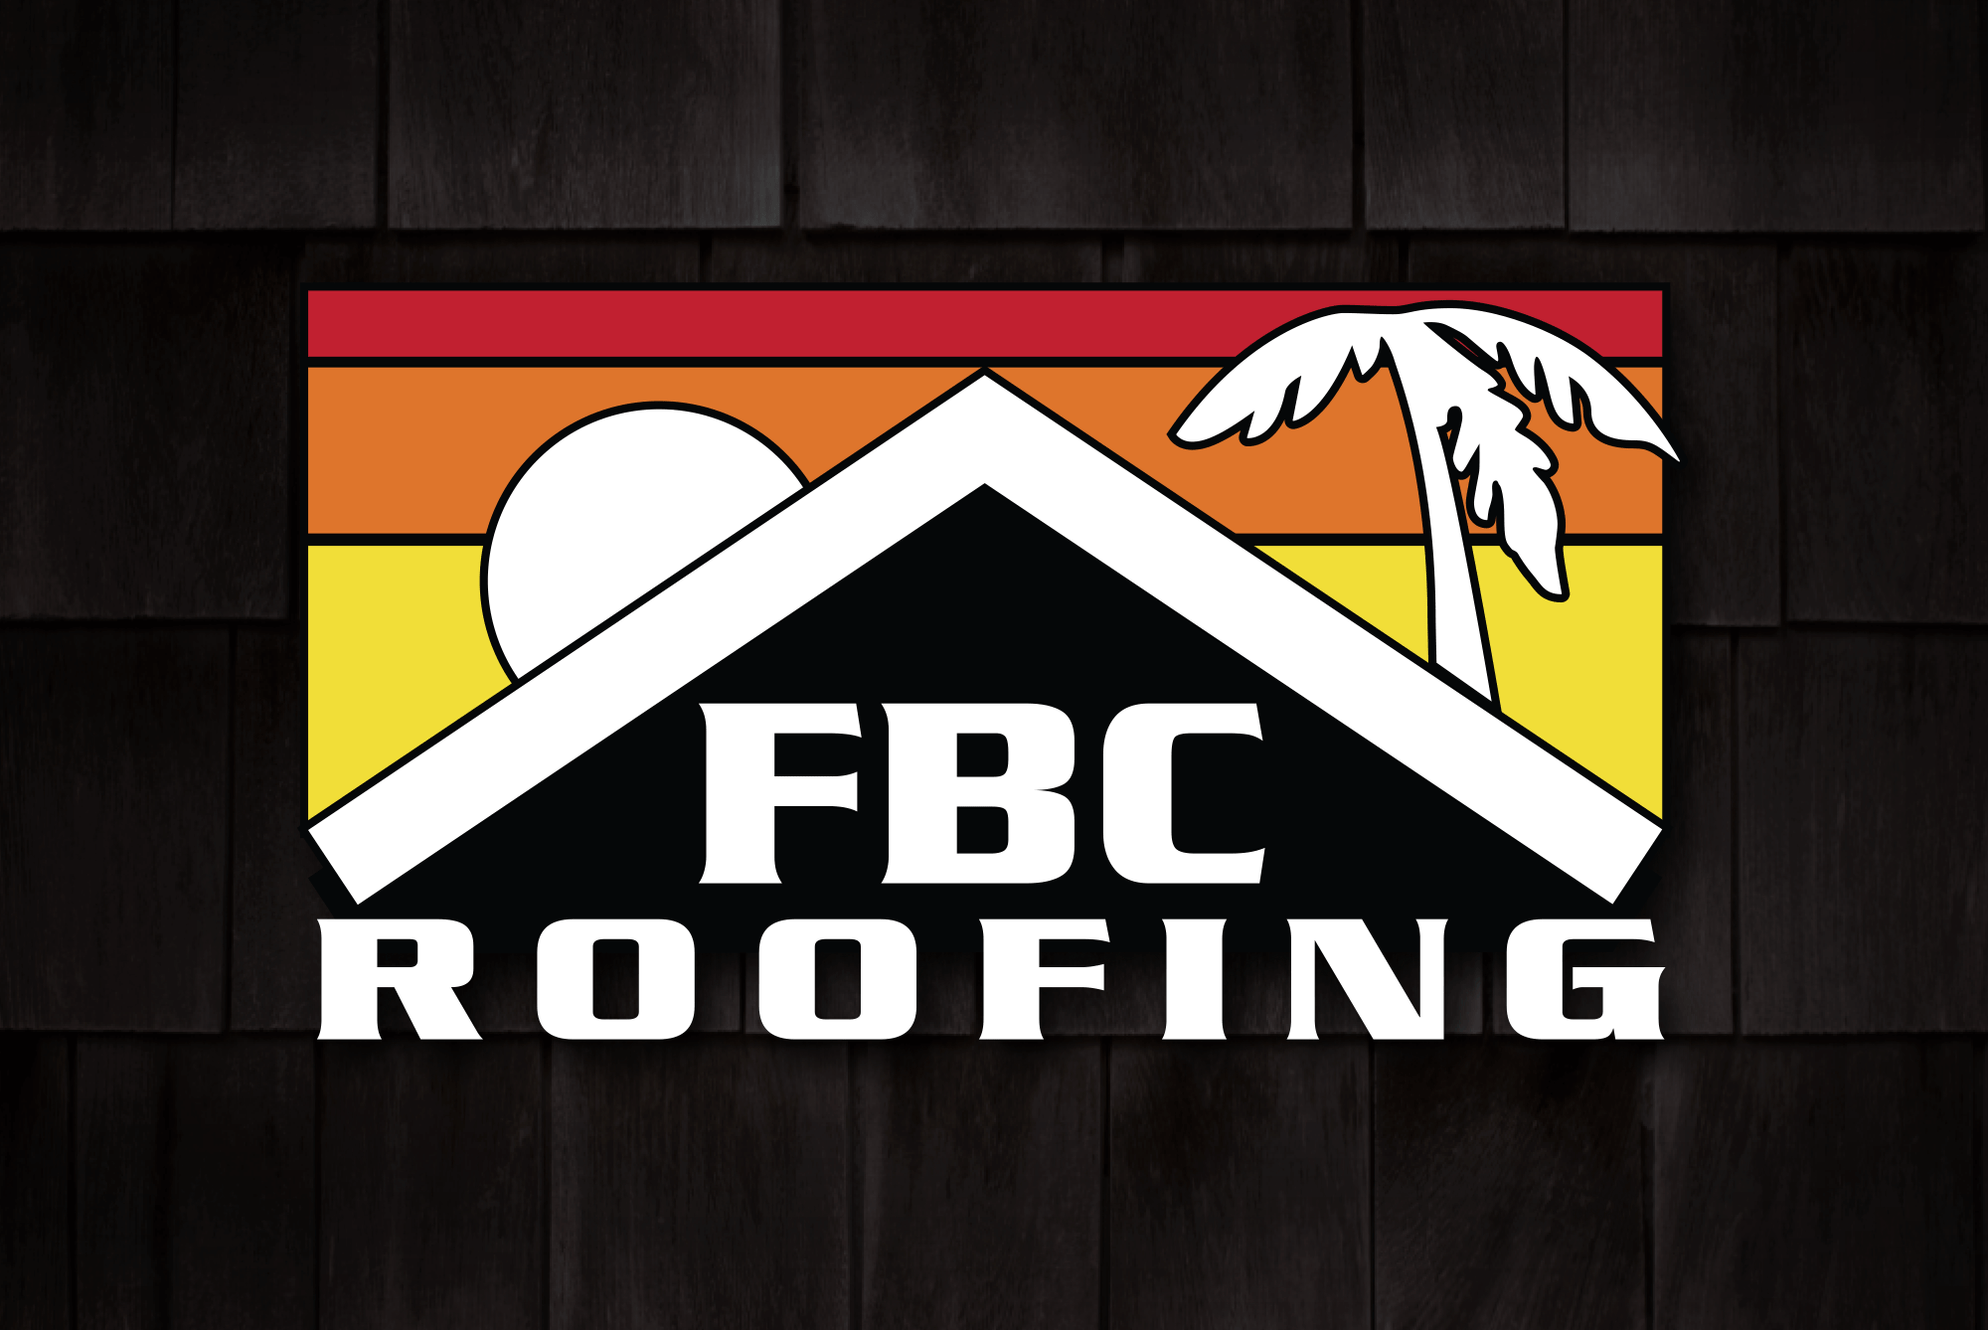 FBC Roofing Utah roofing company in Utah